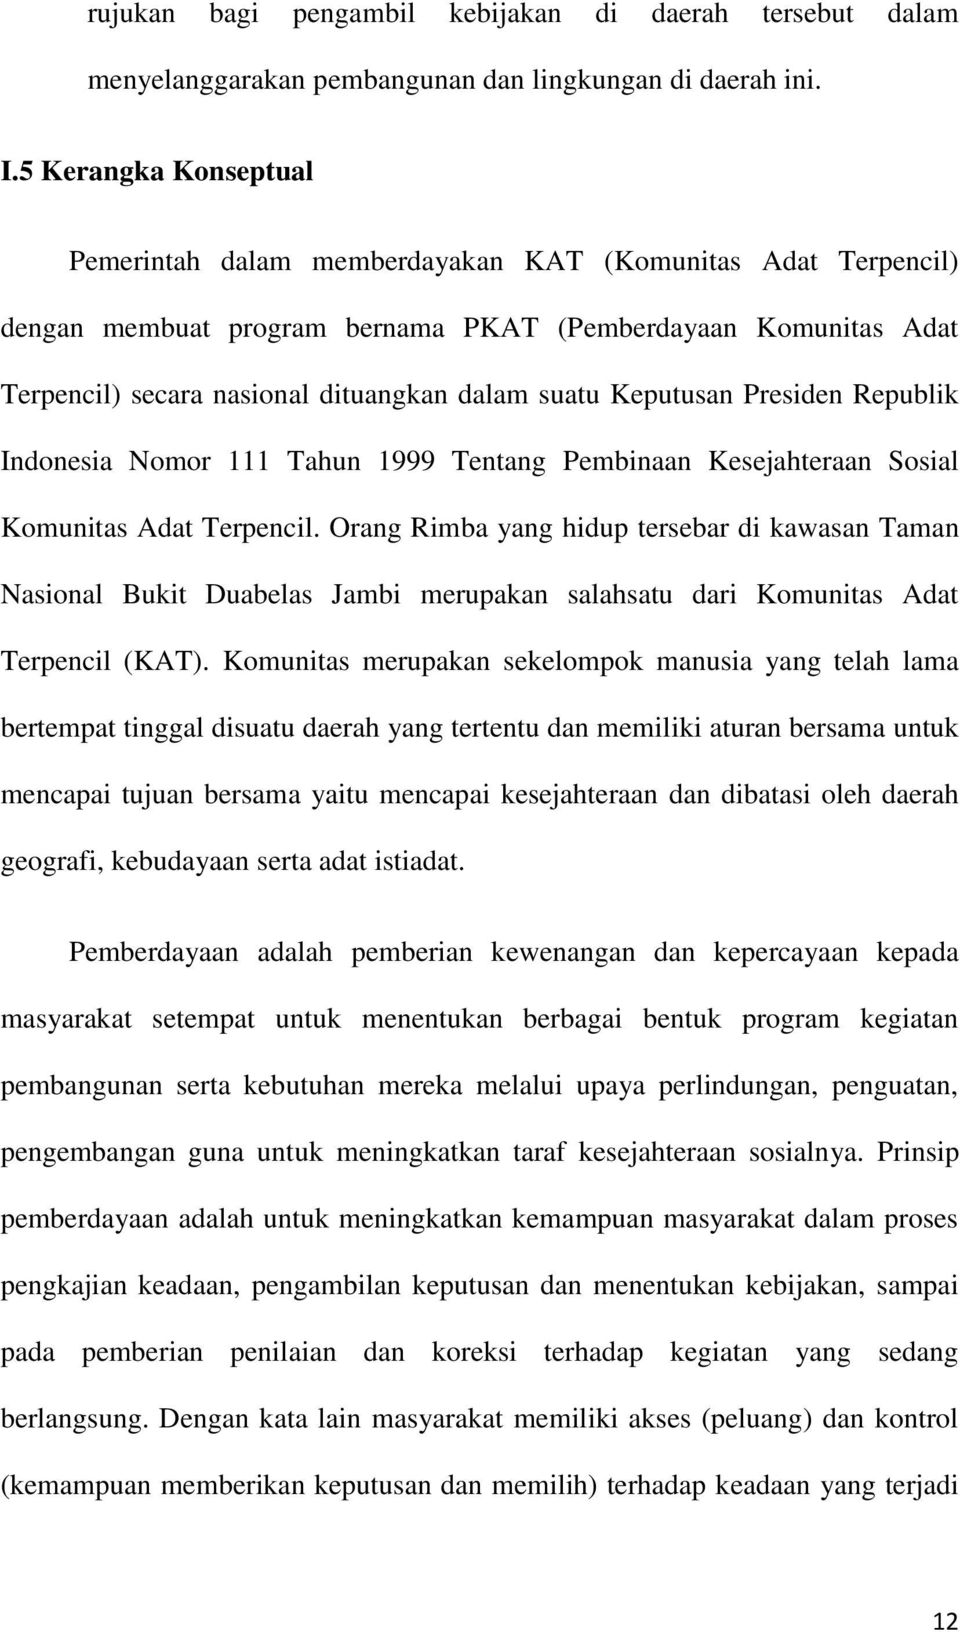 Keputusan Presiden Republik Indonesia Nomor 111 Tahun 1999 Tentang Pembinaan Kesejahteraan Sosial Komunitas Adat Terpencil.